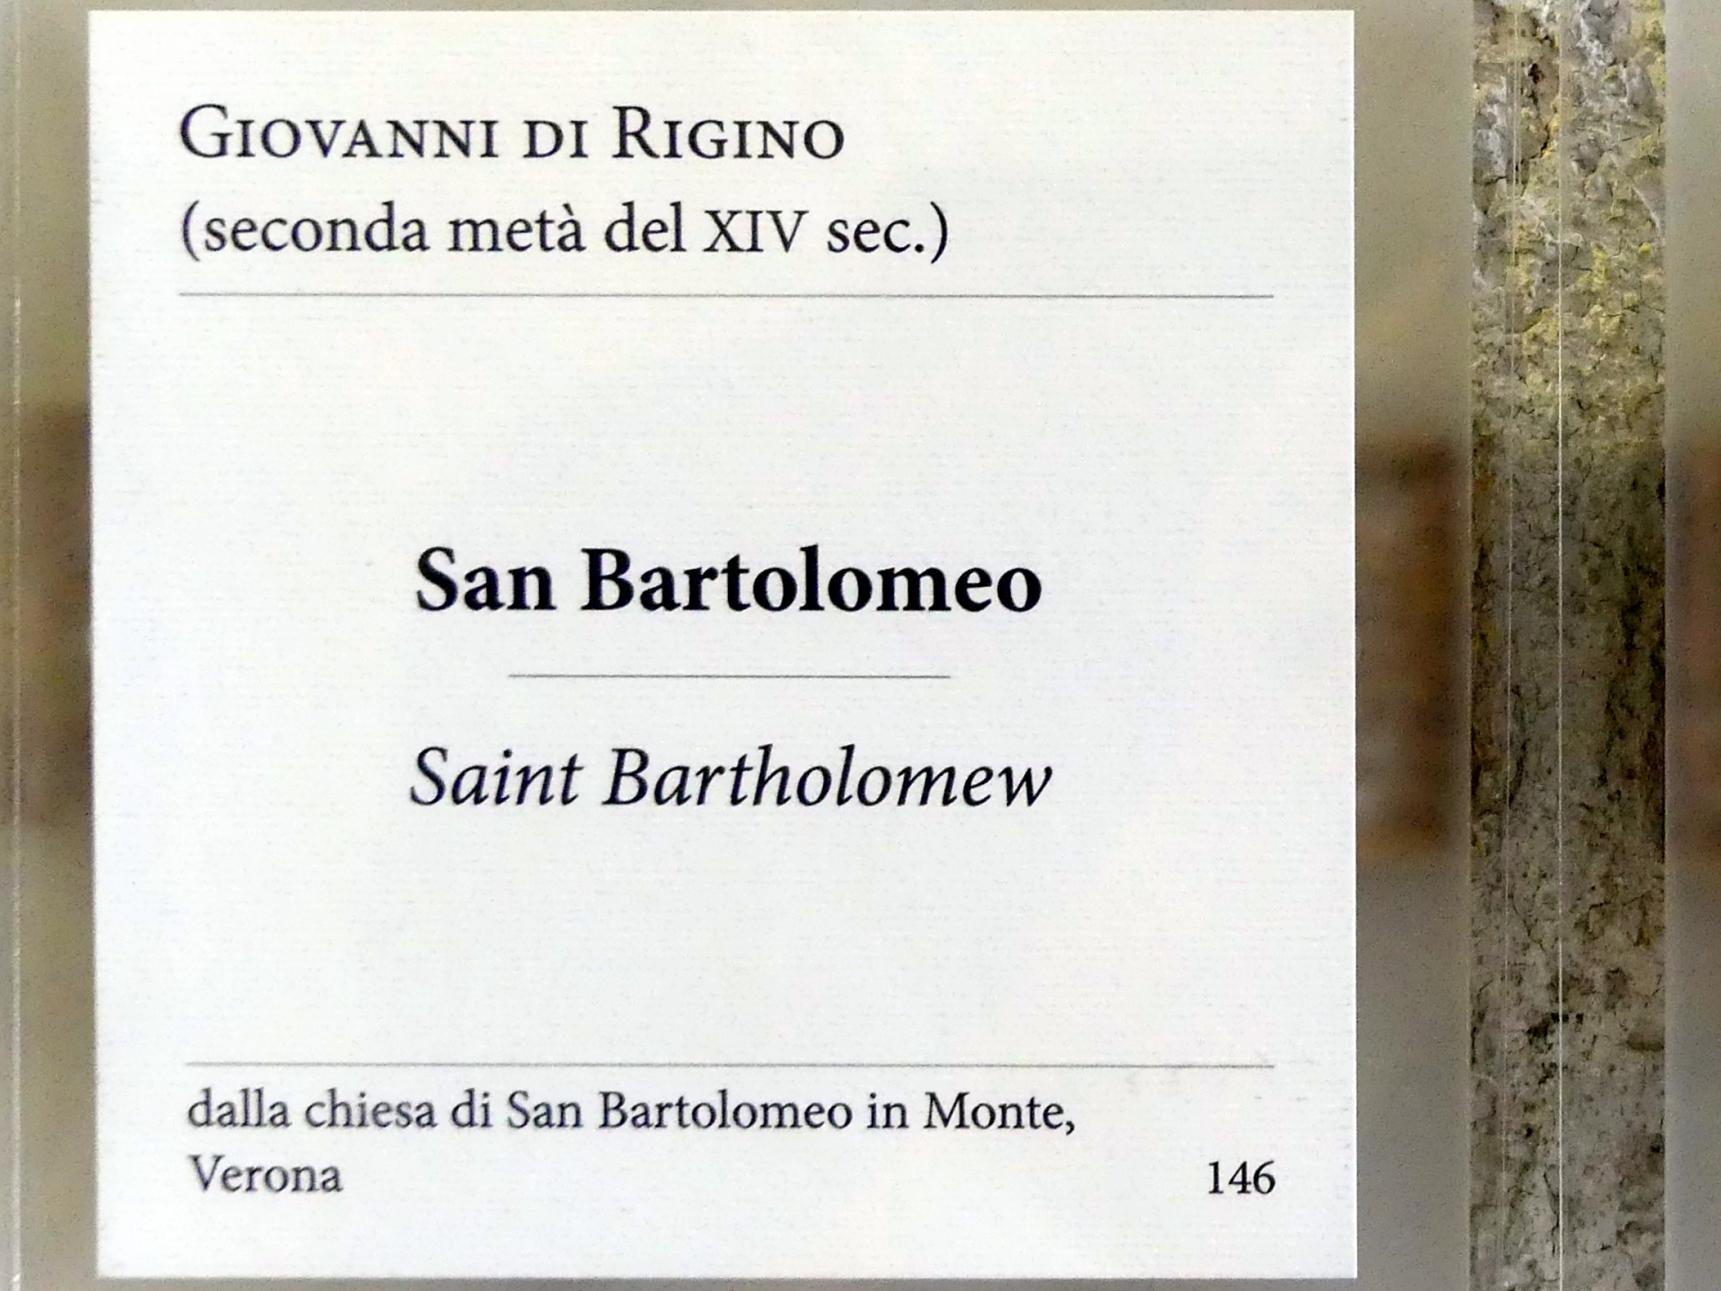 Giovanni di Rigino: Heiliger Bartholomäus, 2. Hälfte 14. Jhd., Bild 2/2